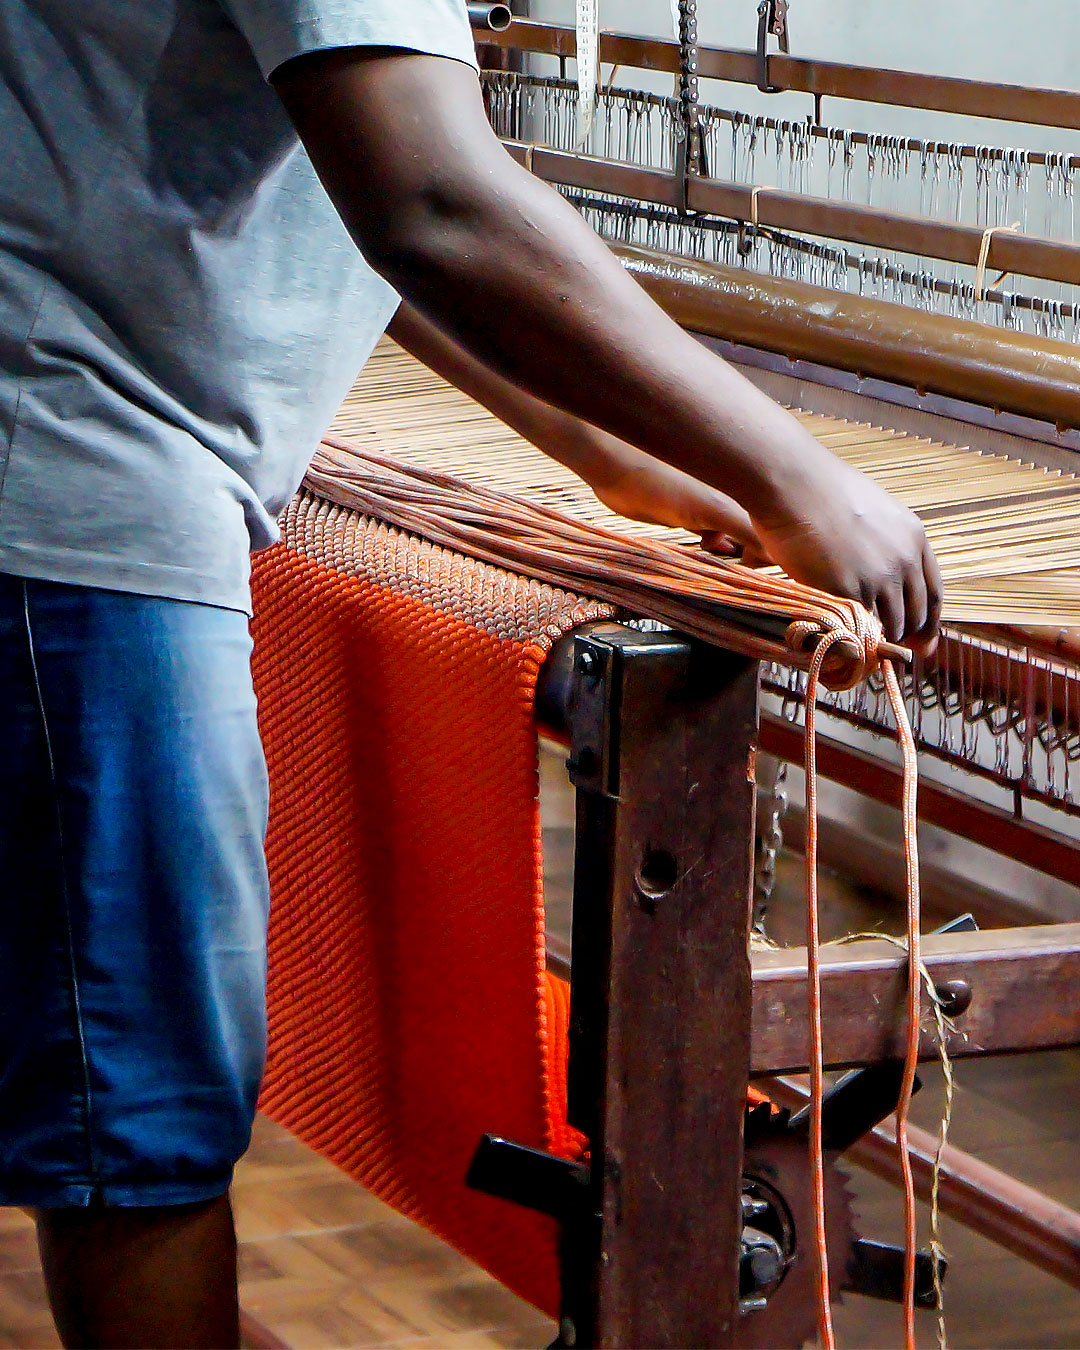 Confecção de tapetes artesanais apoia a sustentabilidade